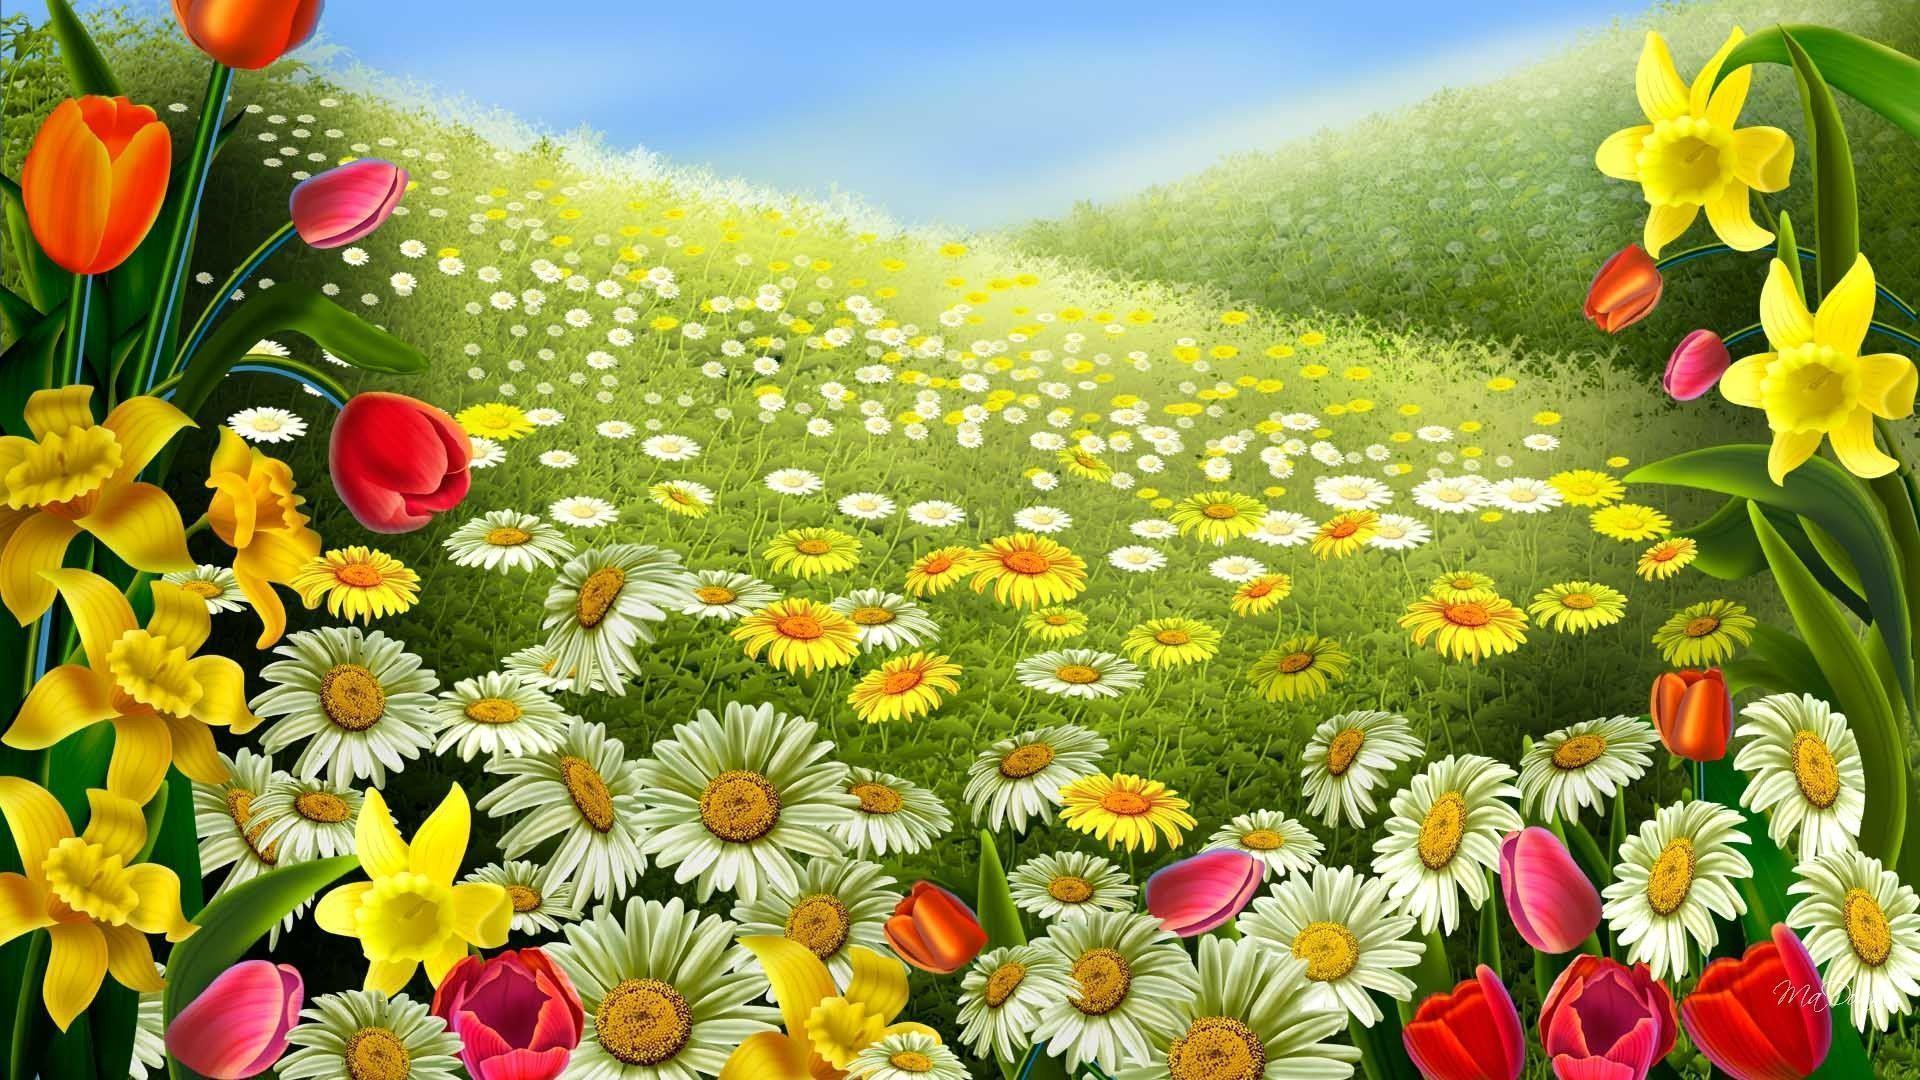 Free Spring Backgrounds Desktop - Wallpaper Cave